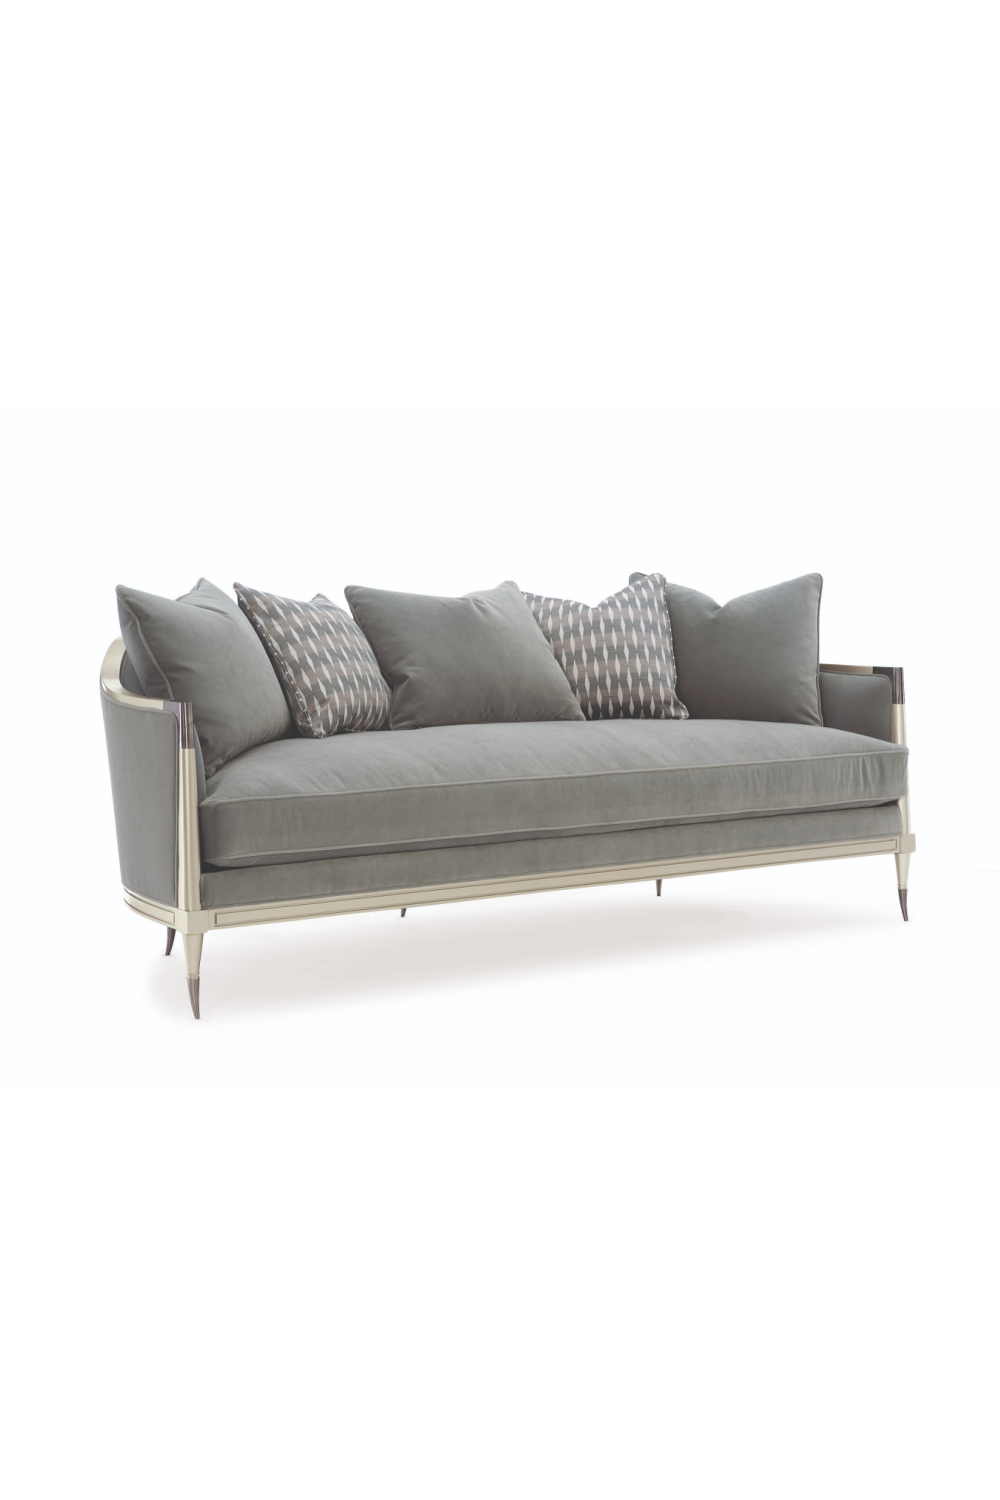 Gray Sofa With Cushions | Caracole Splash of Flash | Oroa.com